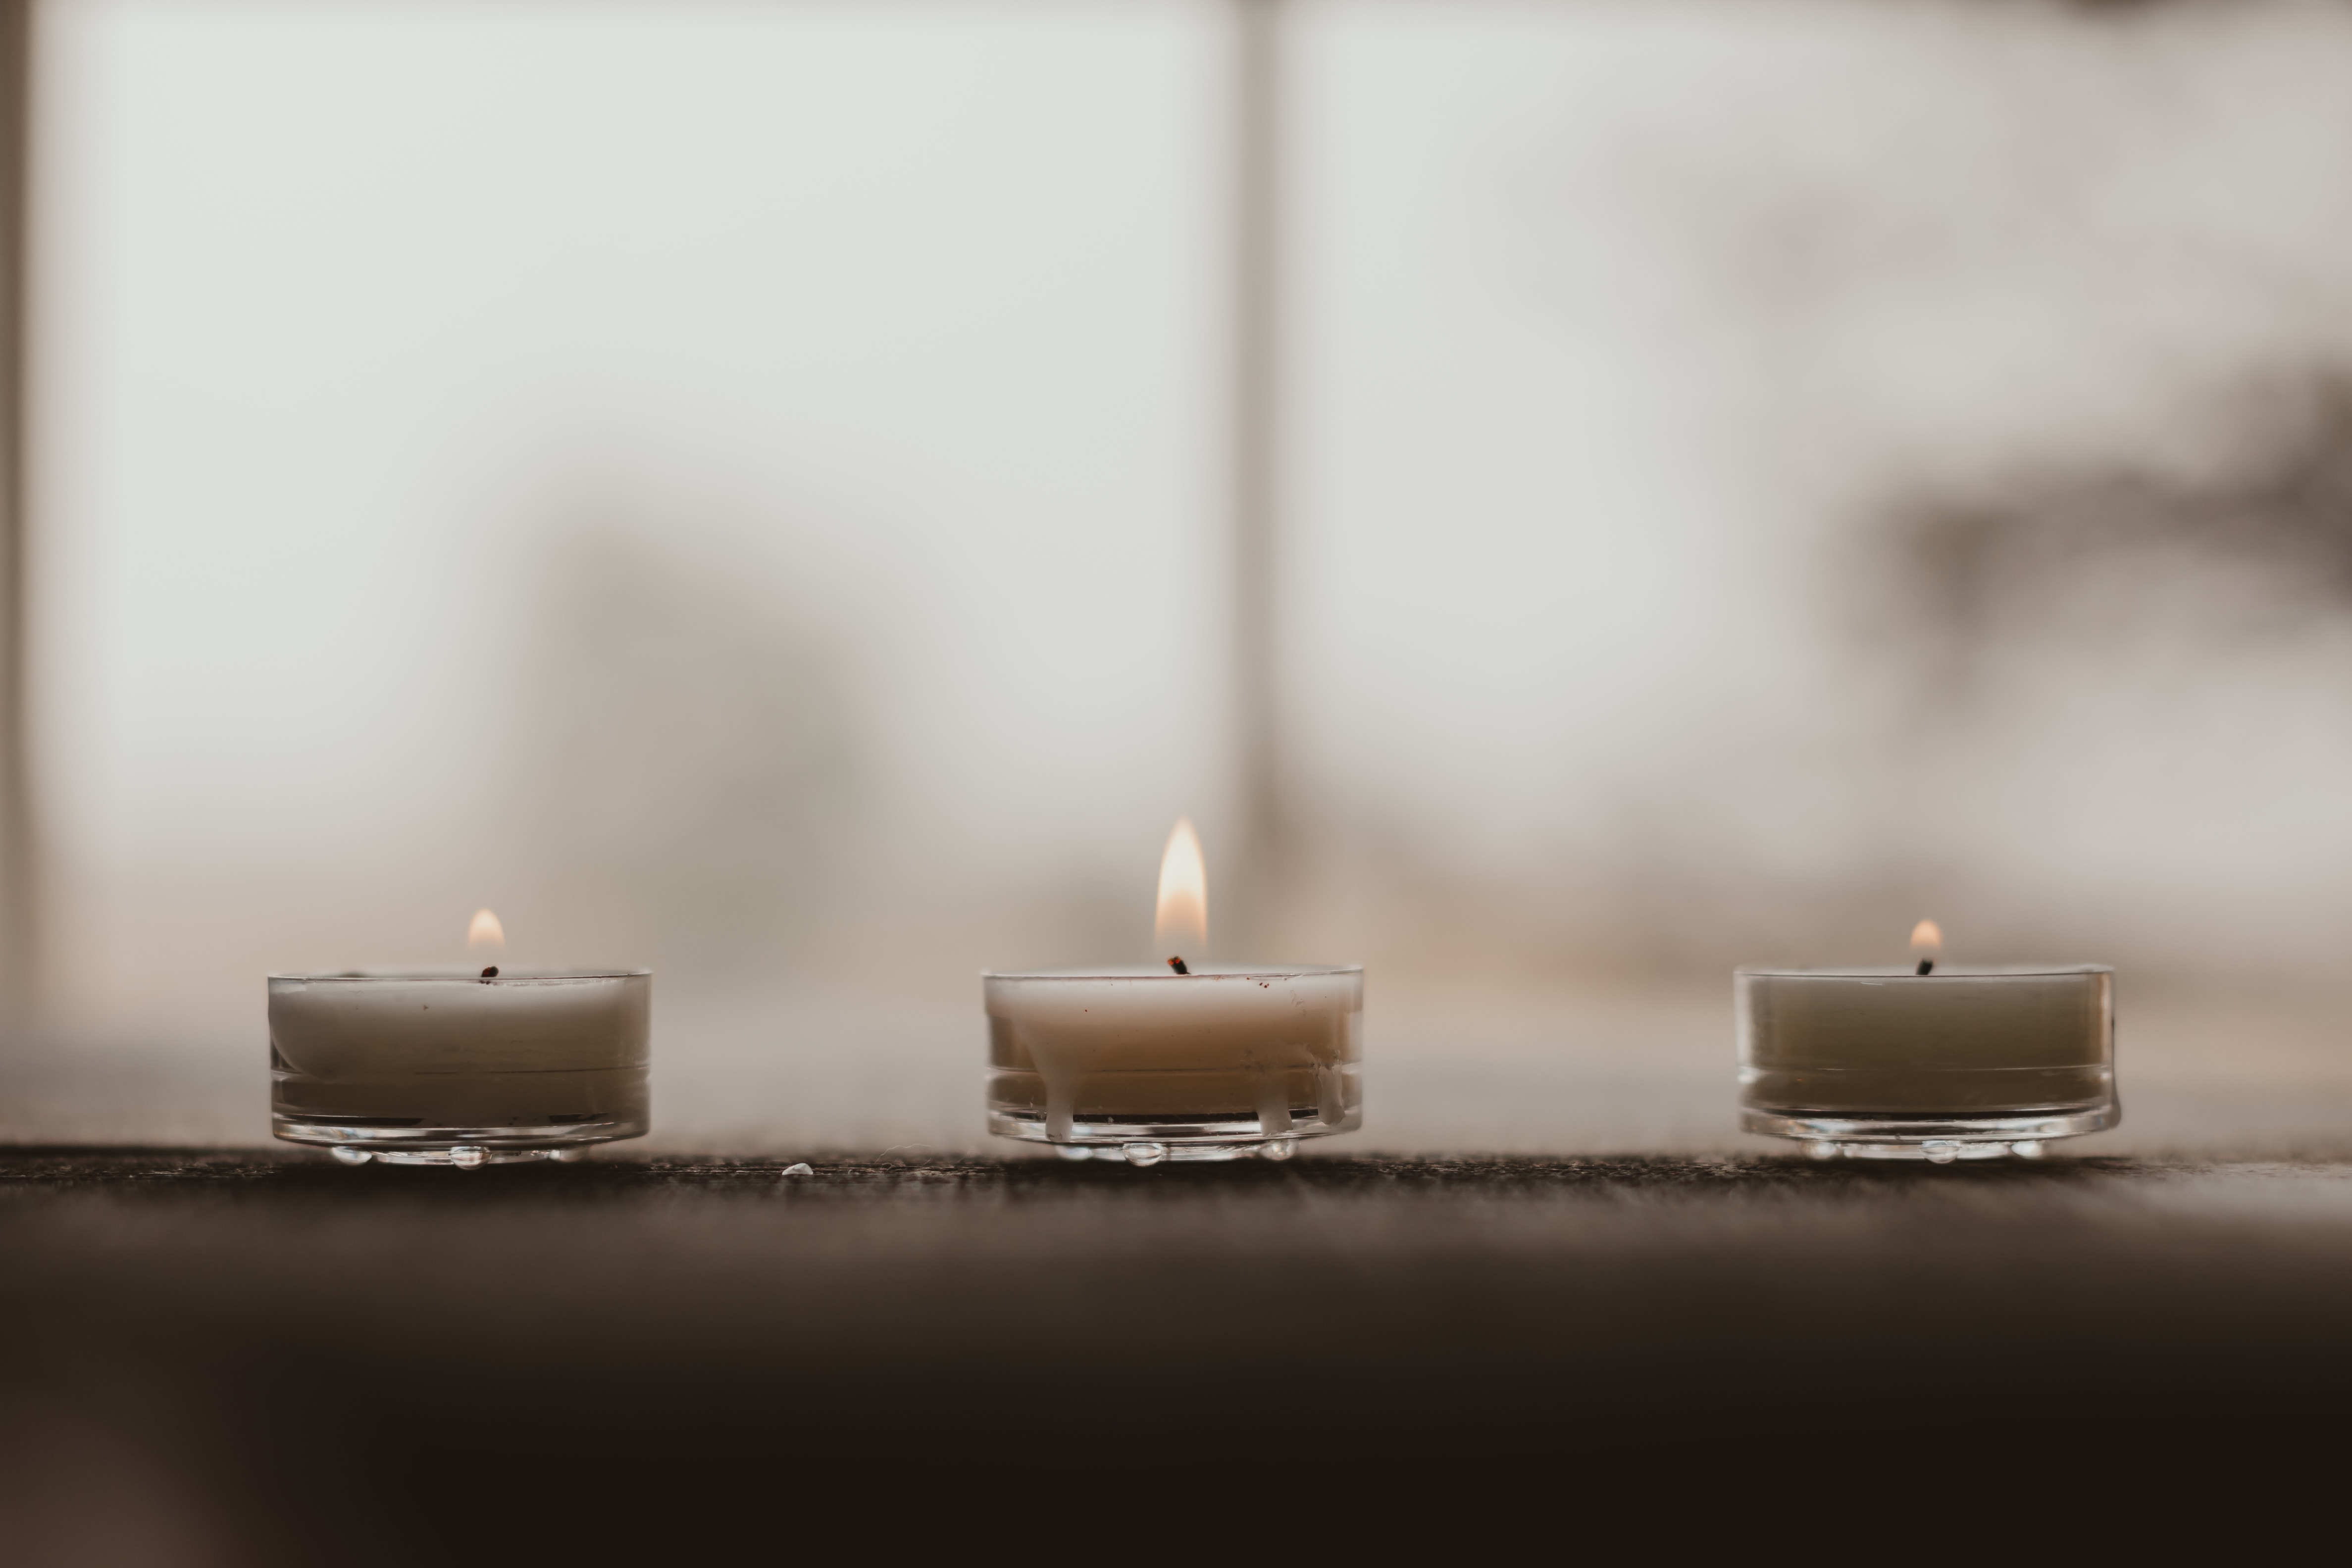 General 4750x3167 calm beige candles bright soft light fire blurred blurry background closeup